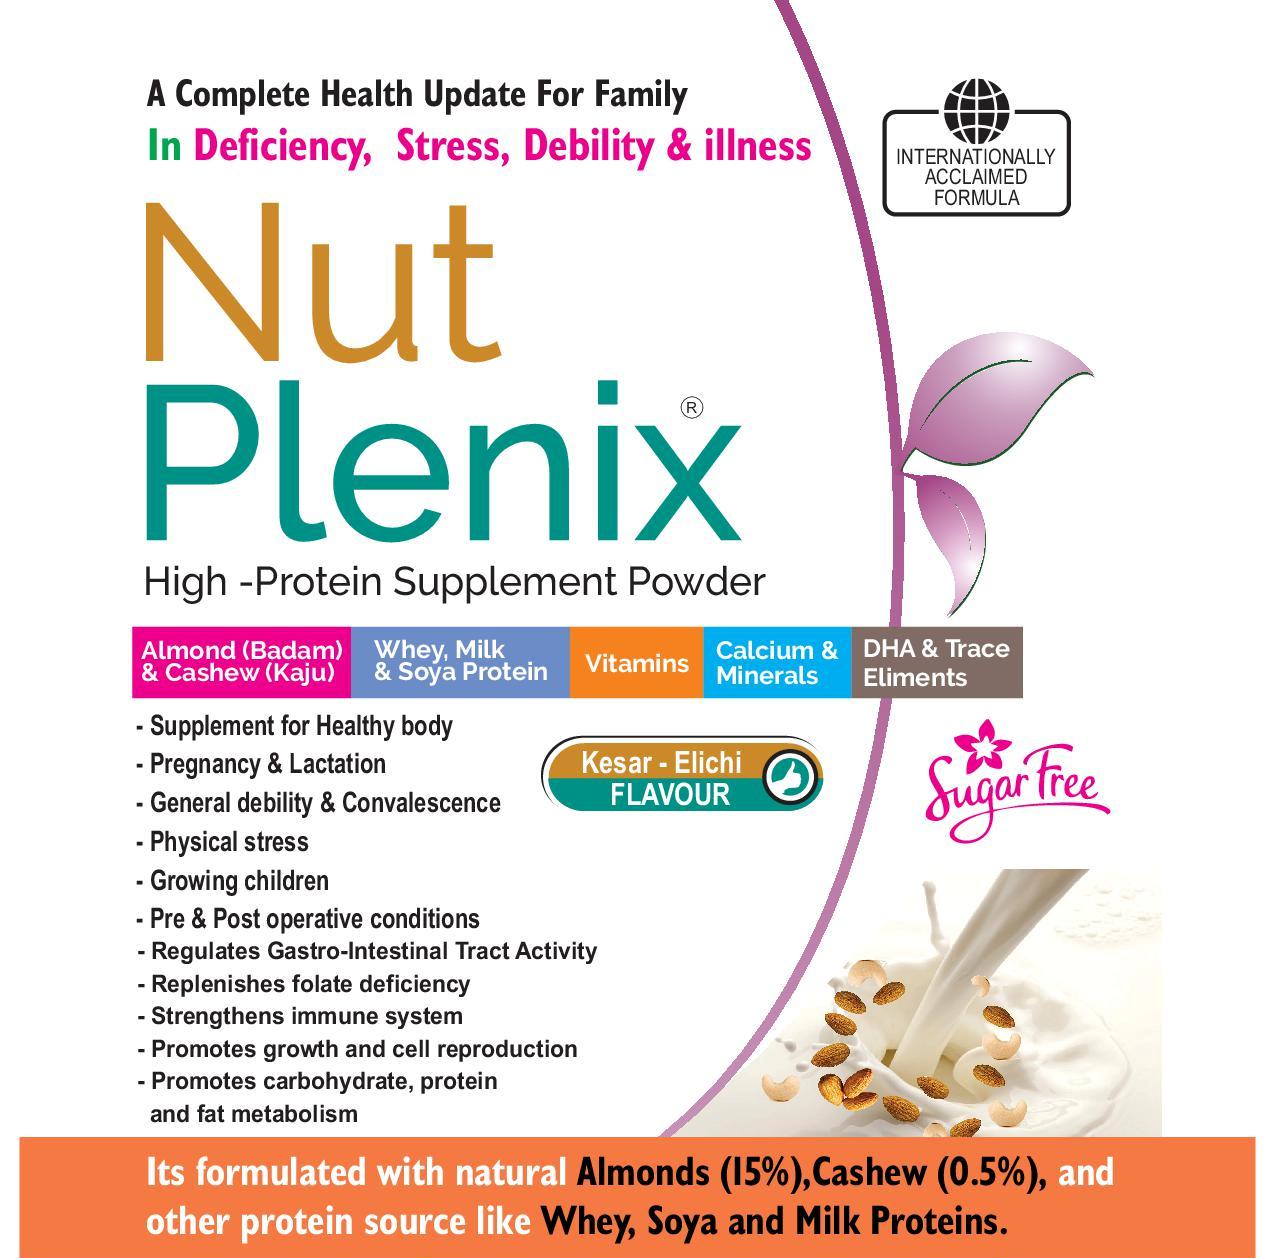 NUT PLENIX PROTEIN SUPPLEMENT POWDER